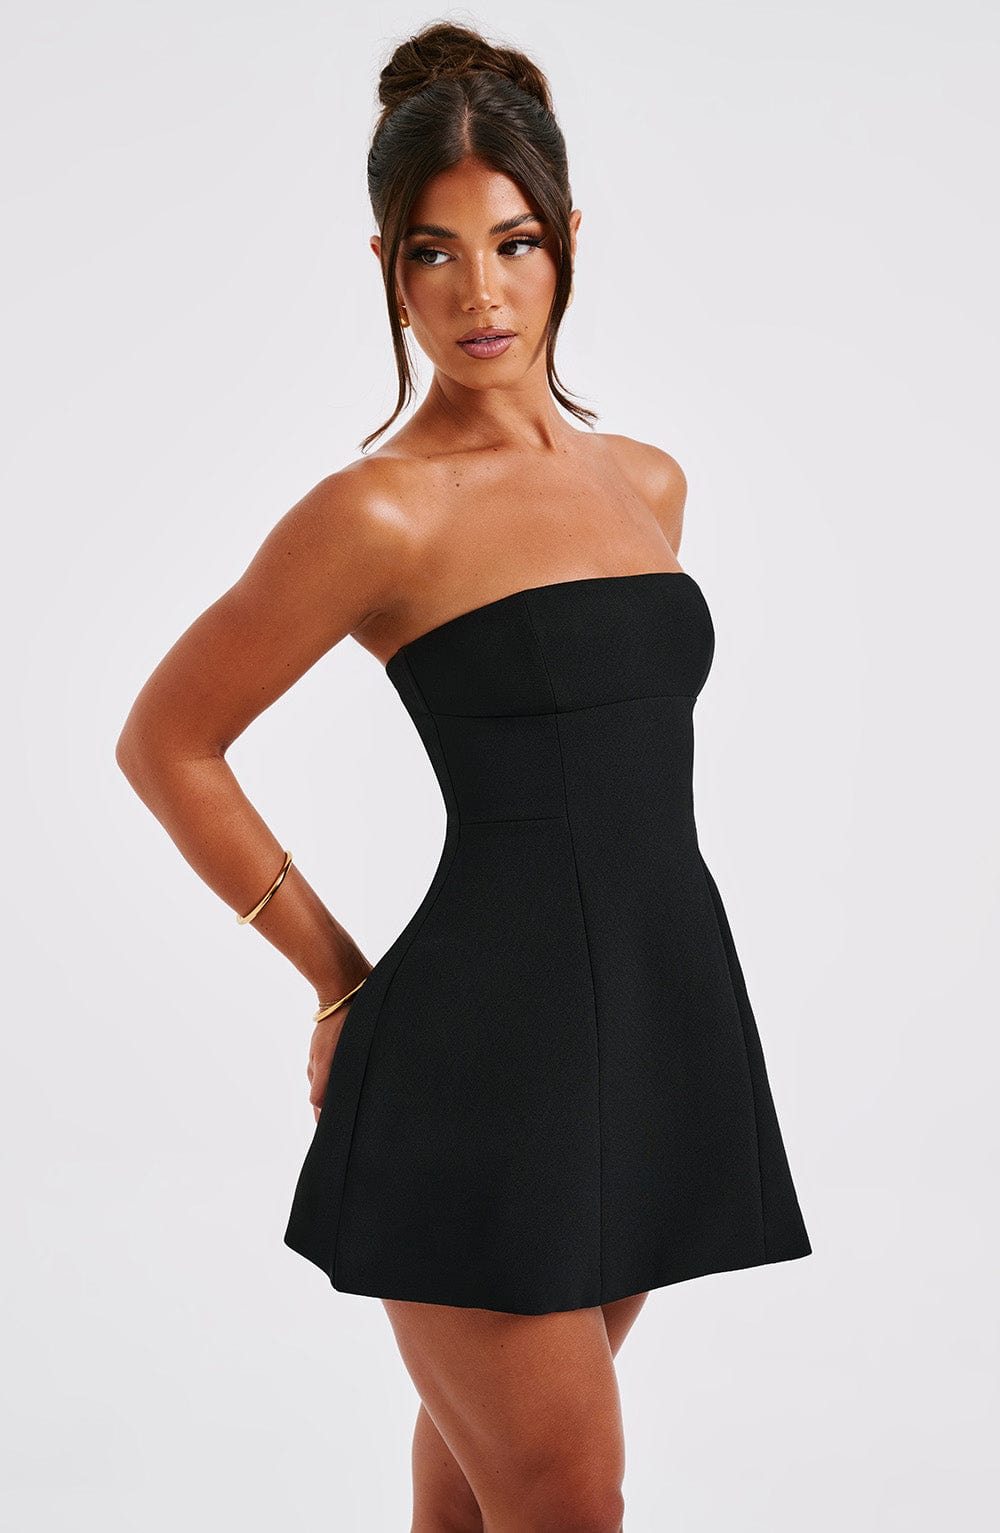 Chic Anna Elegance Black Mini Dress